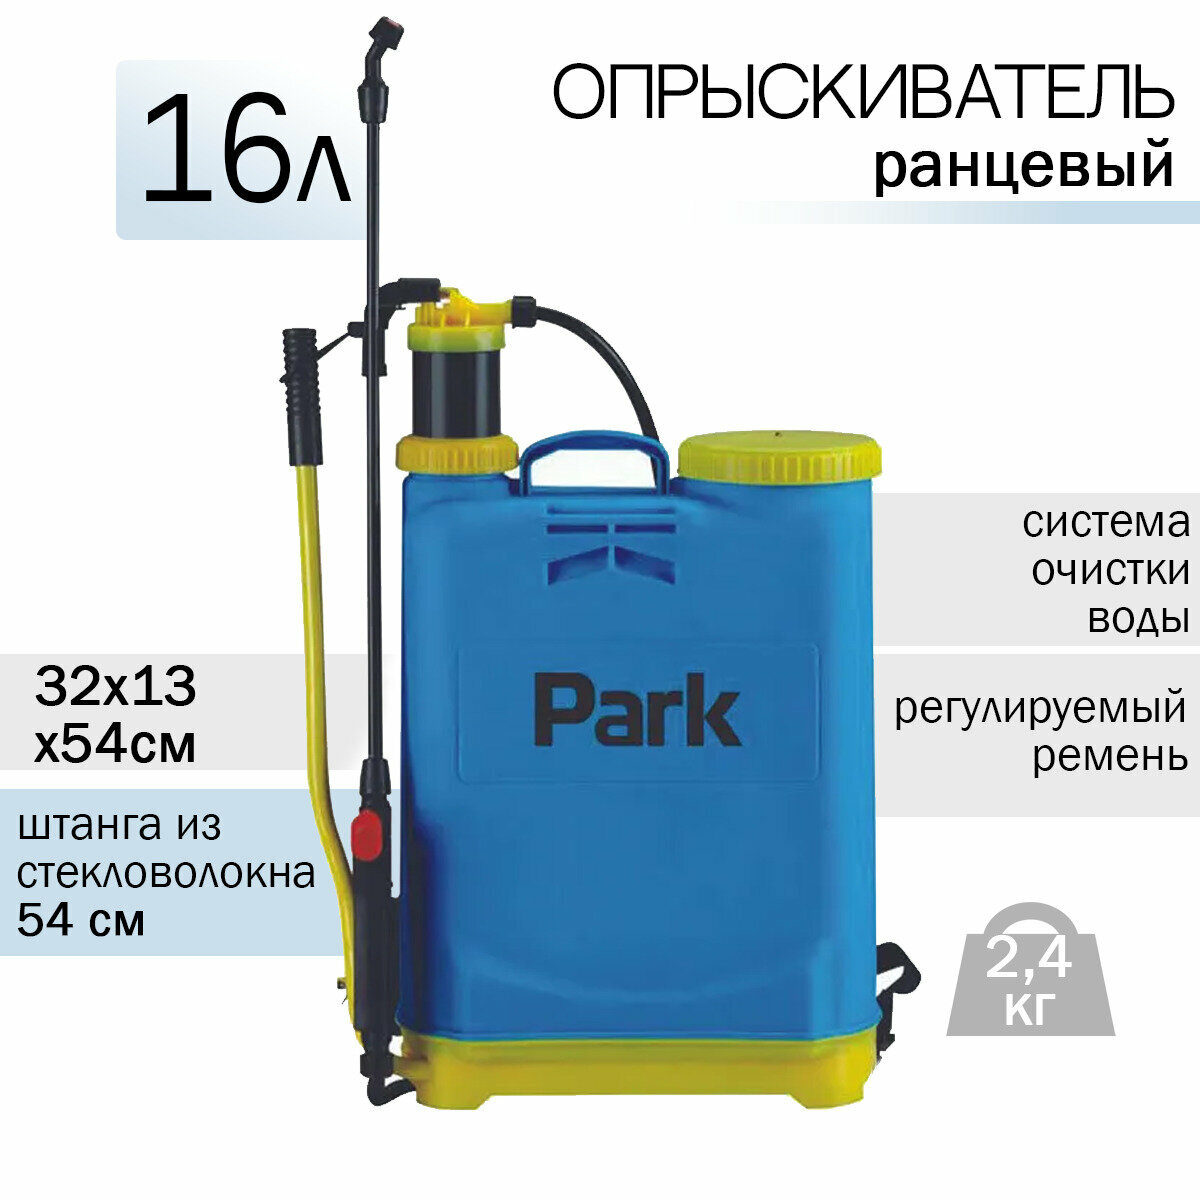 Опрыскиватель 16,0л PARK /3 насадки/ материал: ПП, пластик удочка, пластик шланг/вес 2,4 кг - фотография № 1